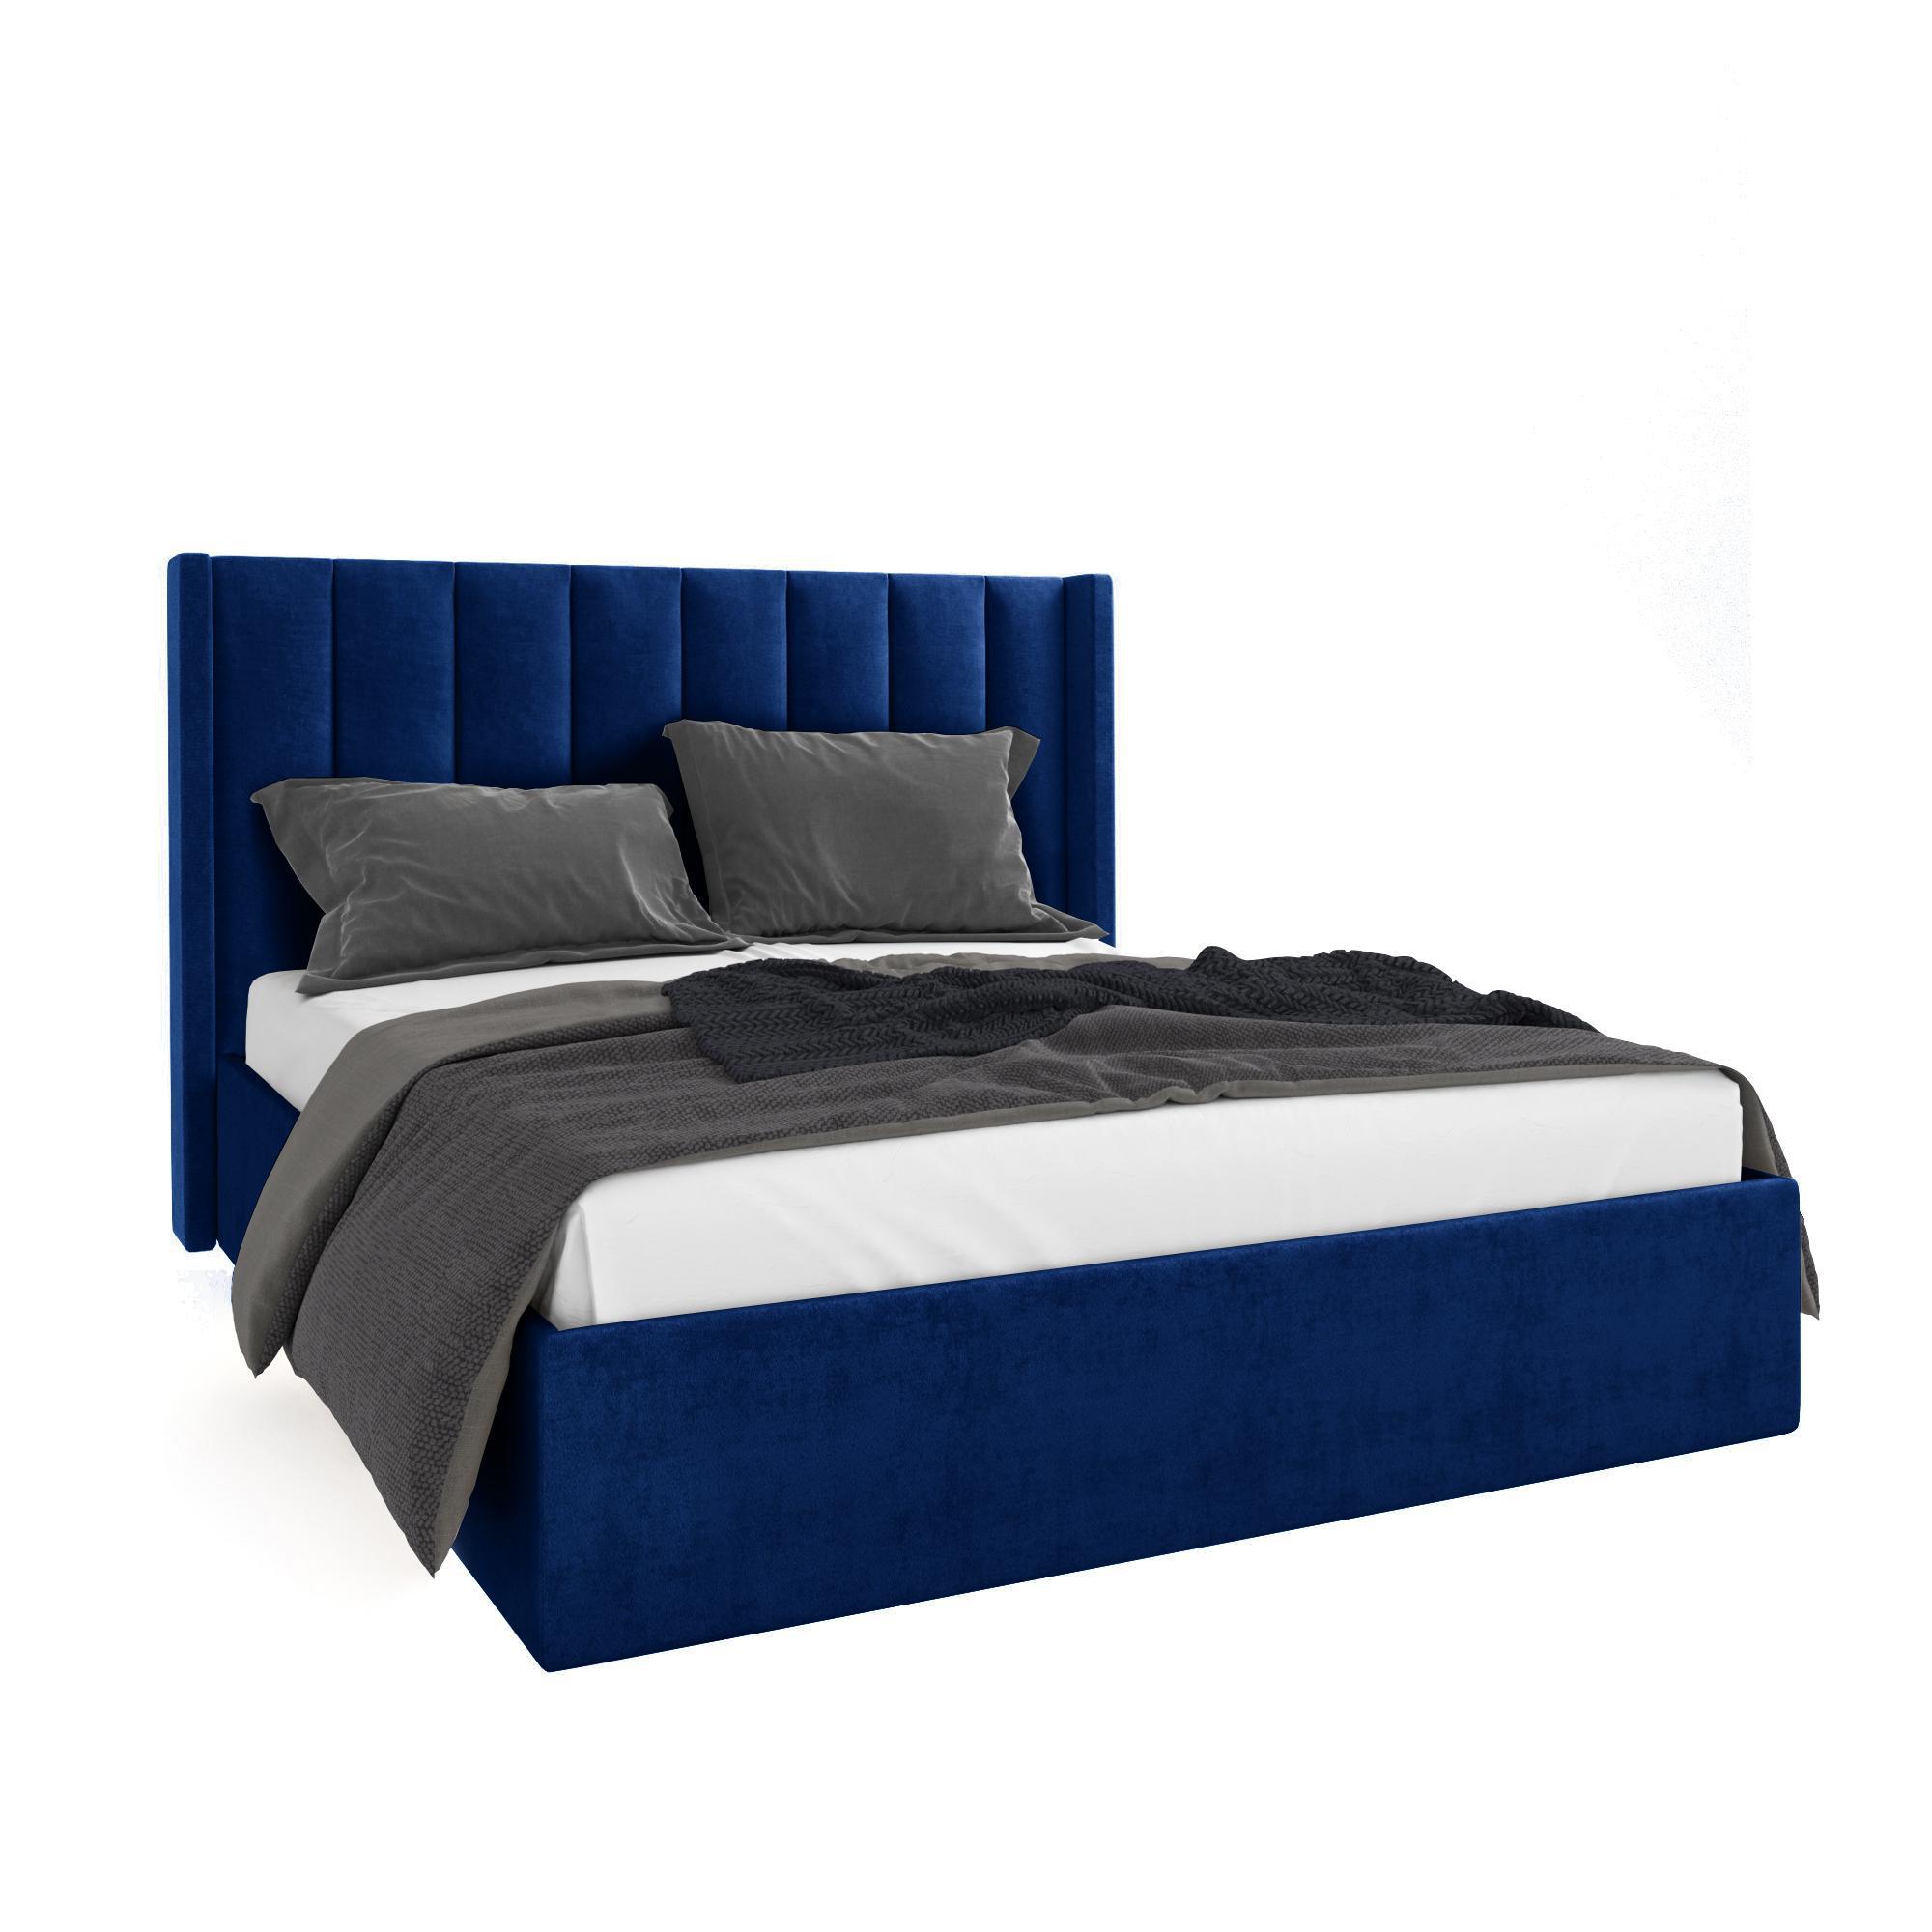 Кровать Жаклиз синяя 120х200 изображение товара